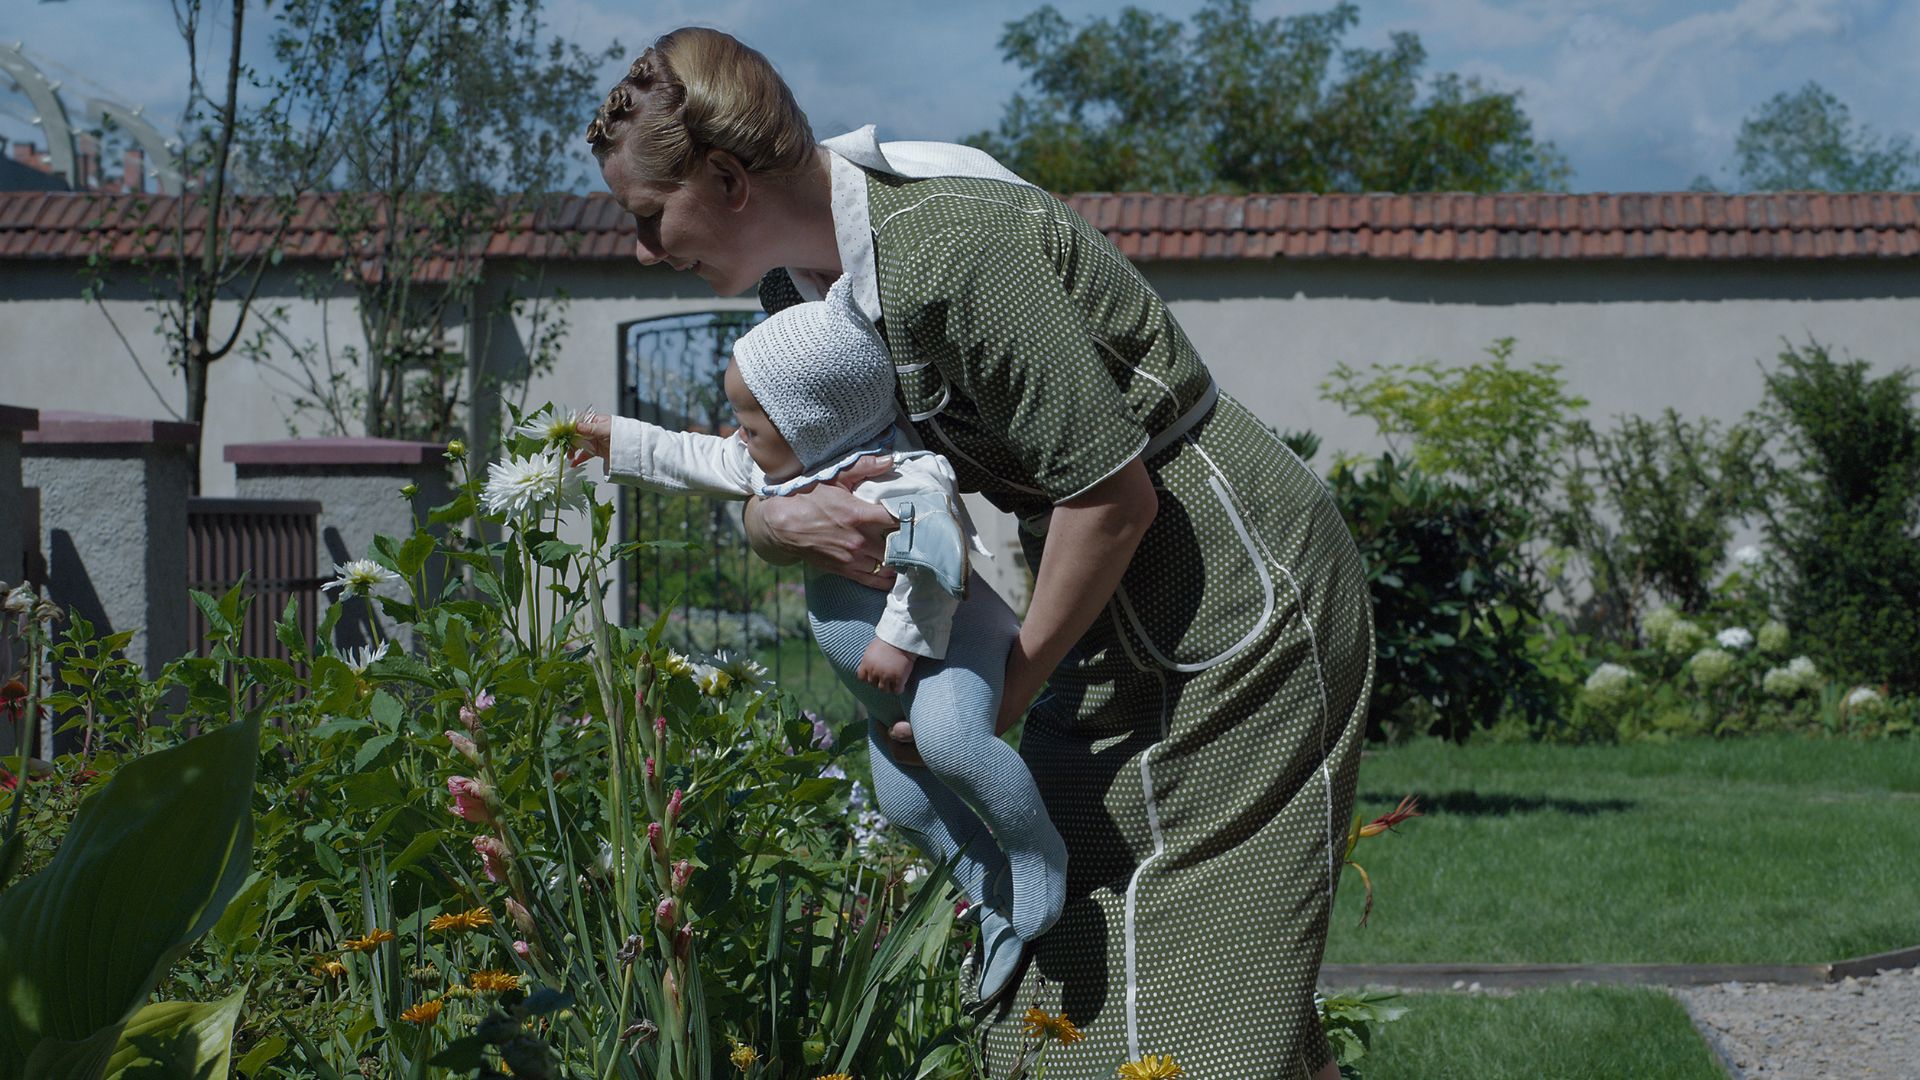 Kobieta spędzająca czas z dzieckiem w ogrodzie.